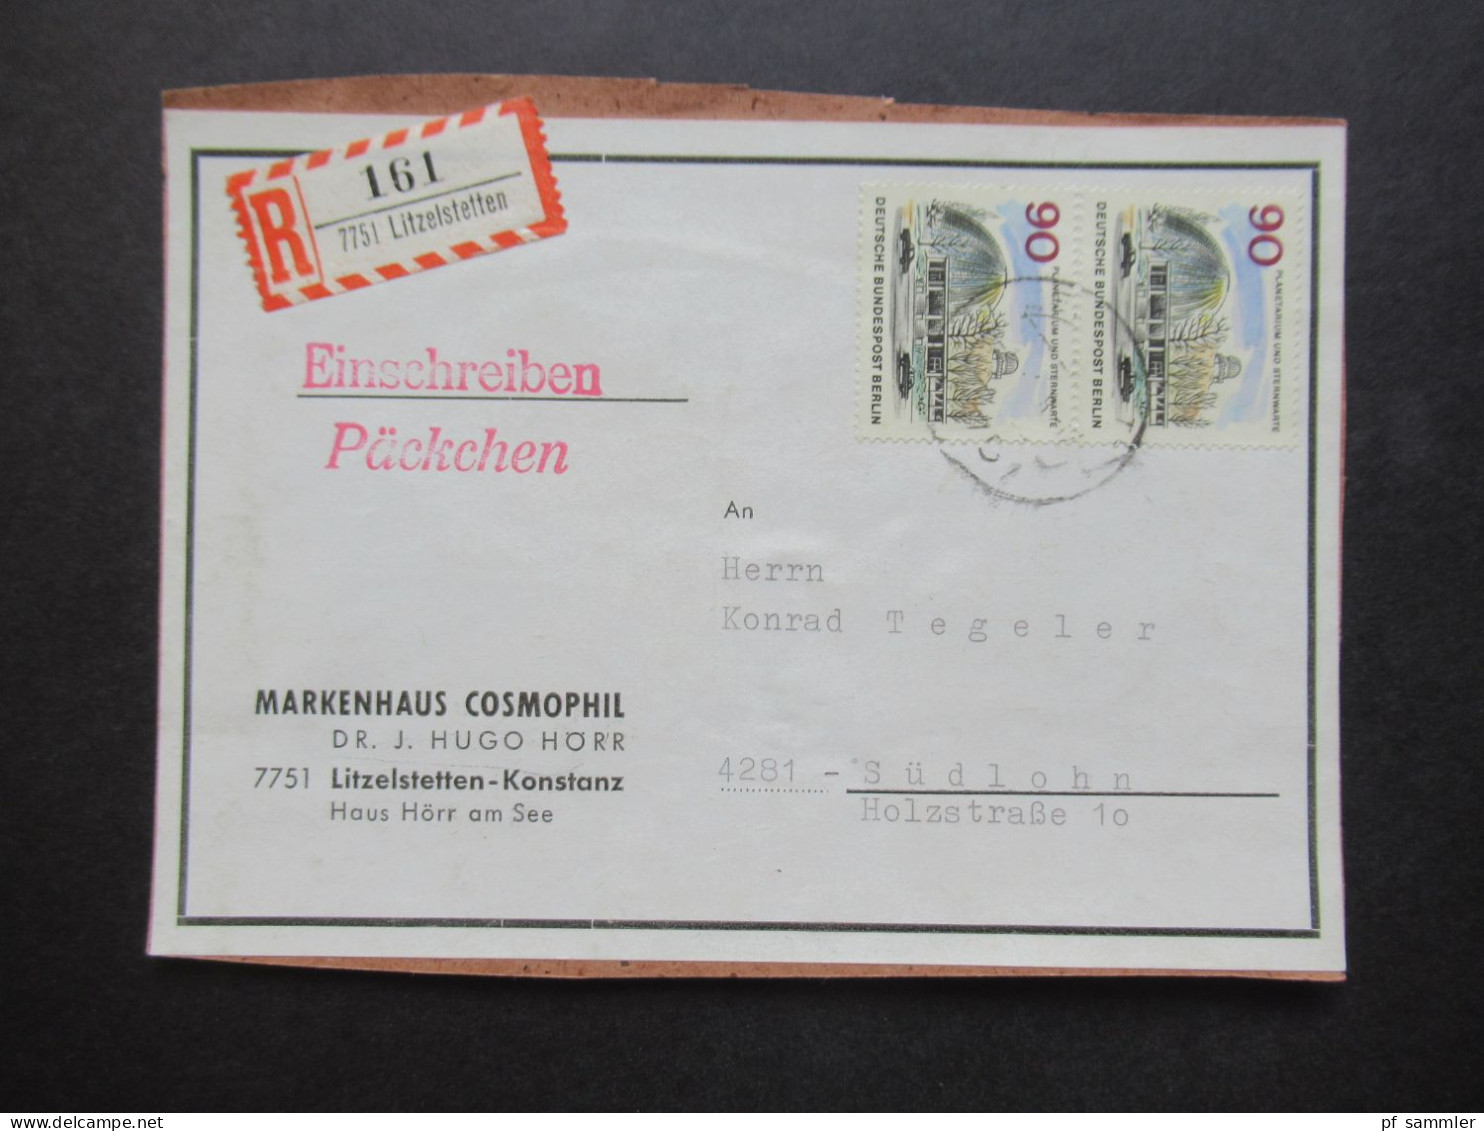 Berlin (West) 1965 Das Neue Berlin Nr.263 (2) MeF Auf Packchenadresse Einschreiben Päckchen 7751 Litzelstetten - Cartas & Documentos